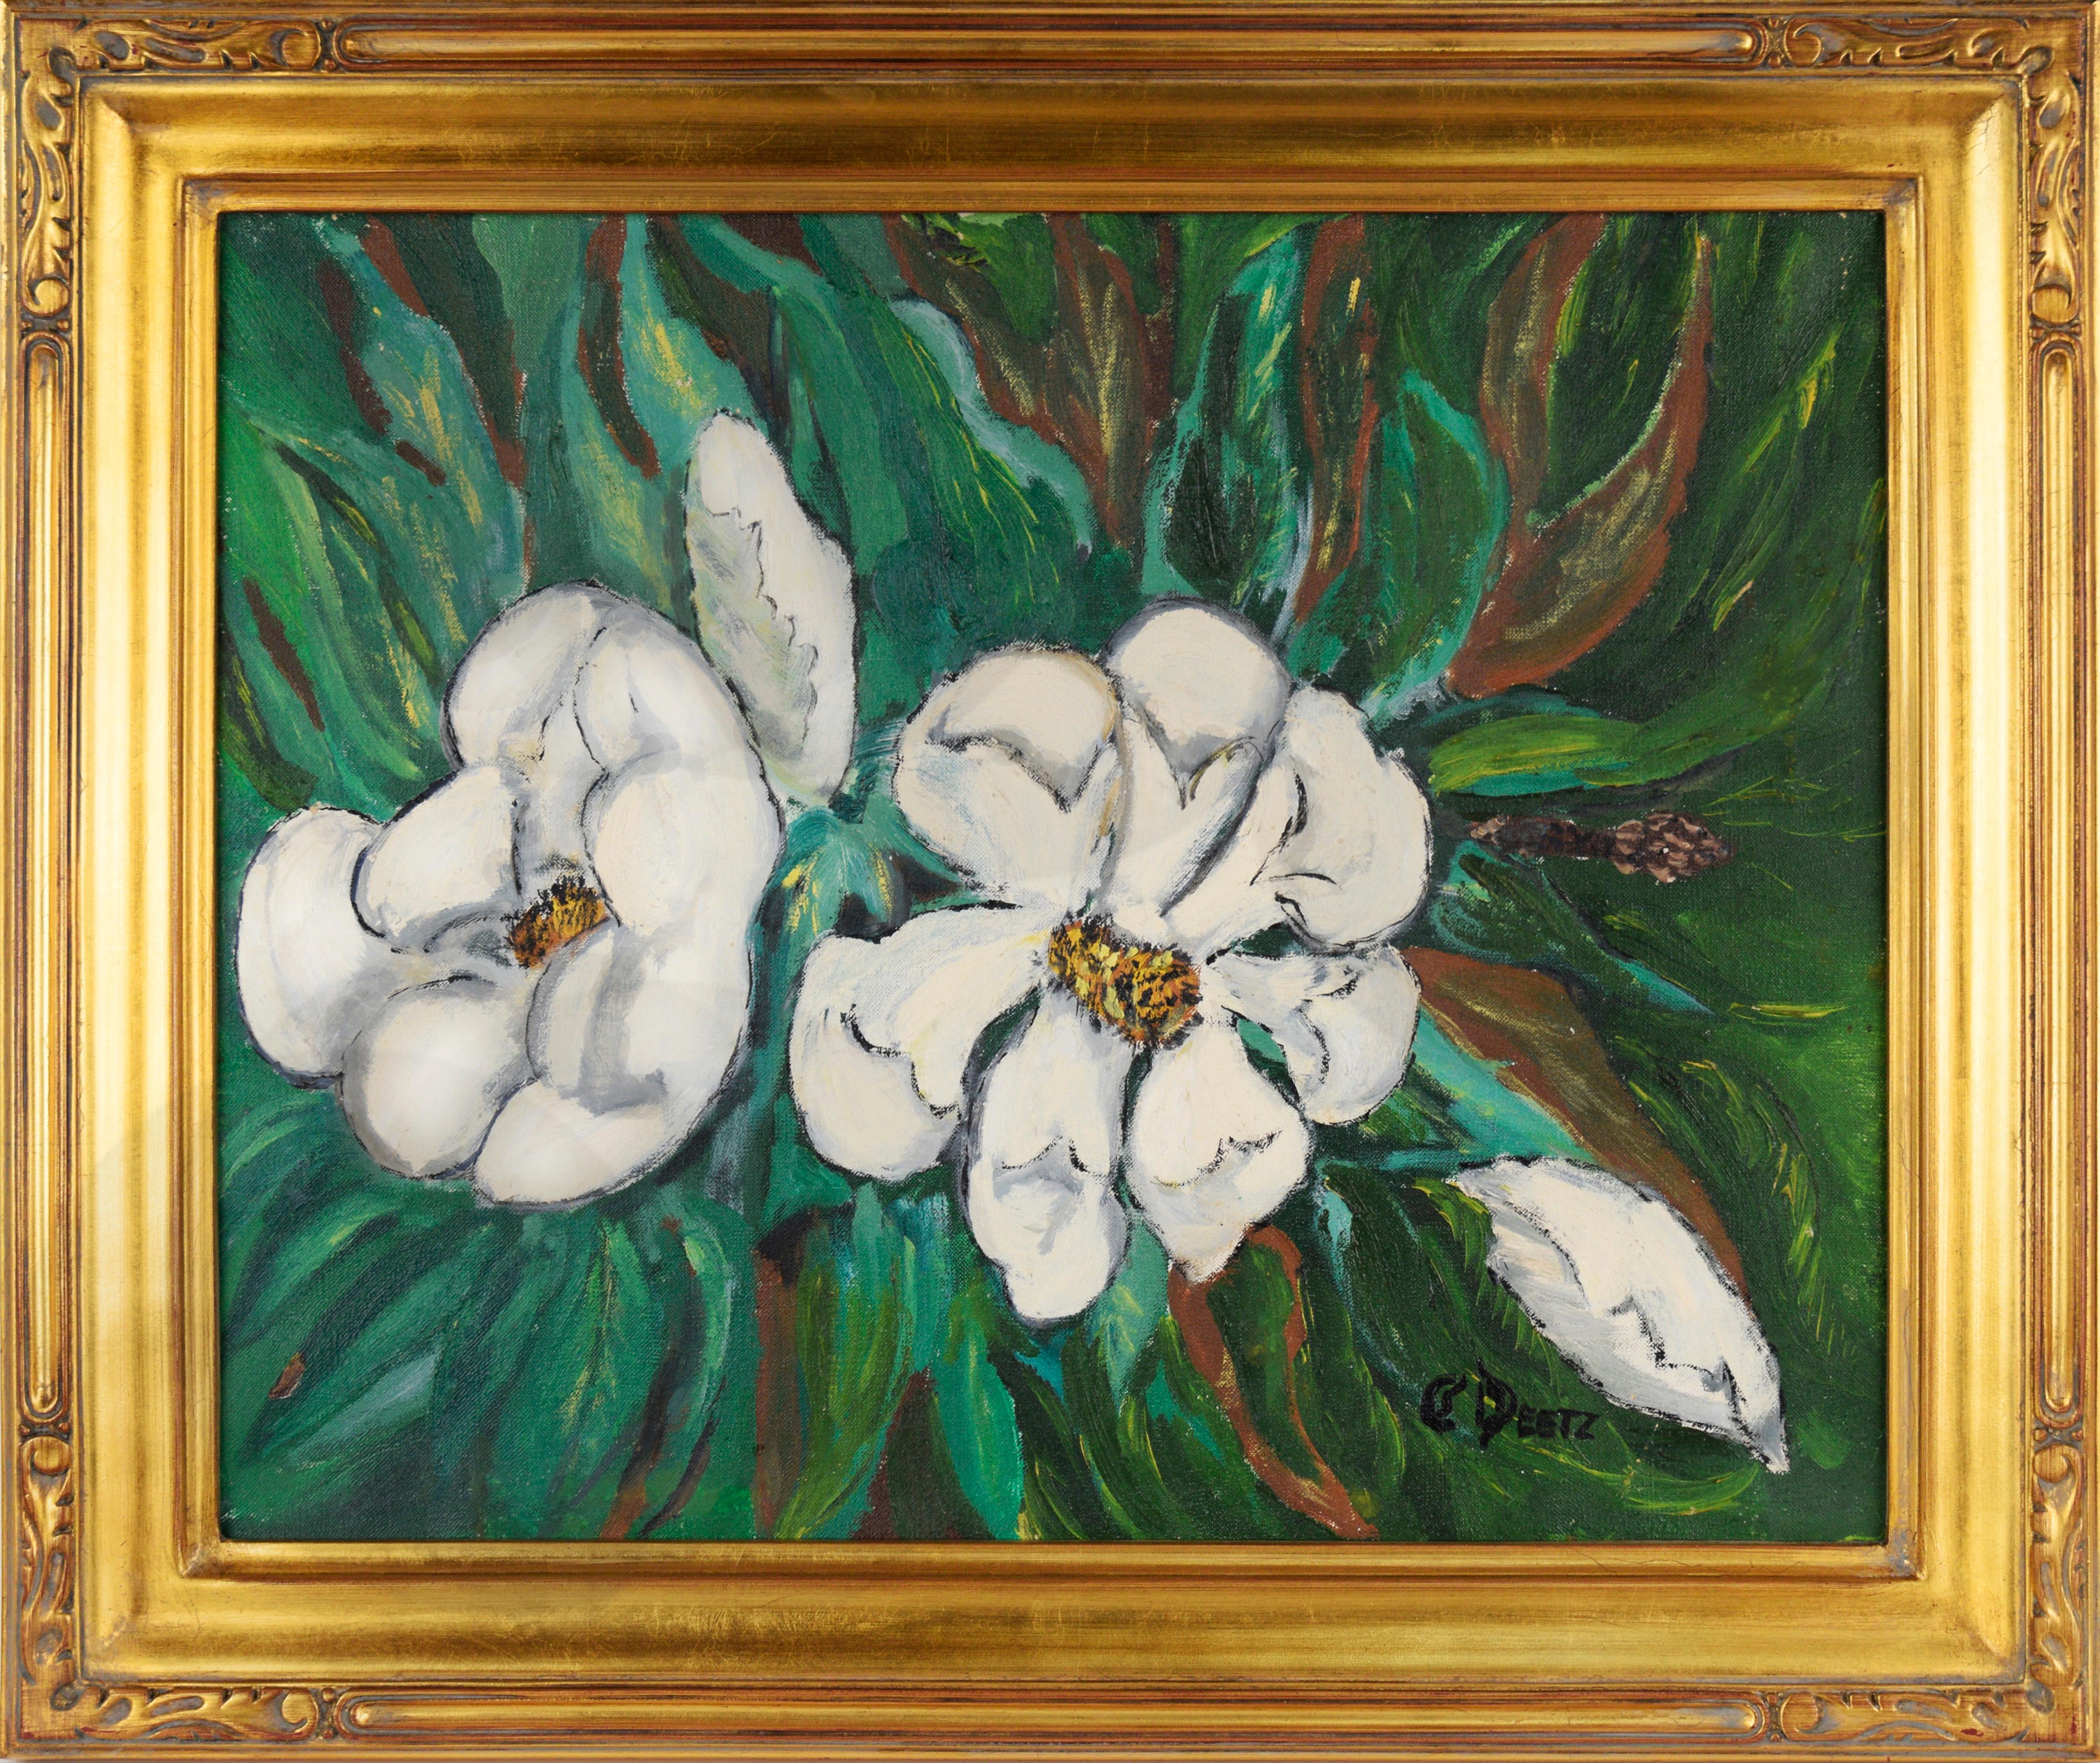 C. Deetz Landscape Painting - Modernist Southern Magnolia Original Oil Painting